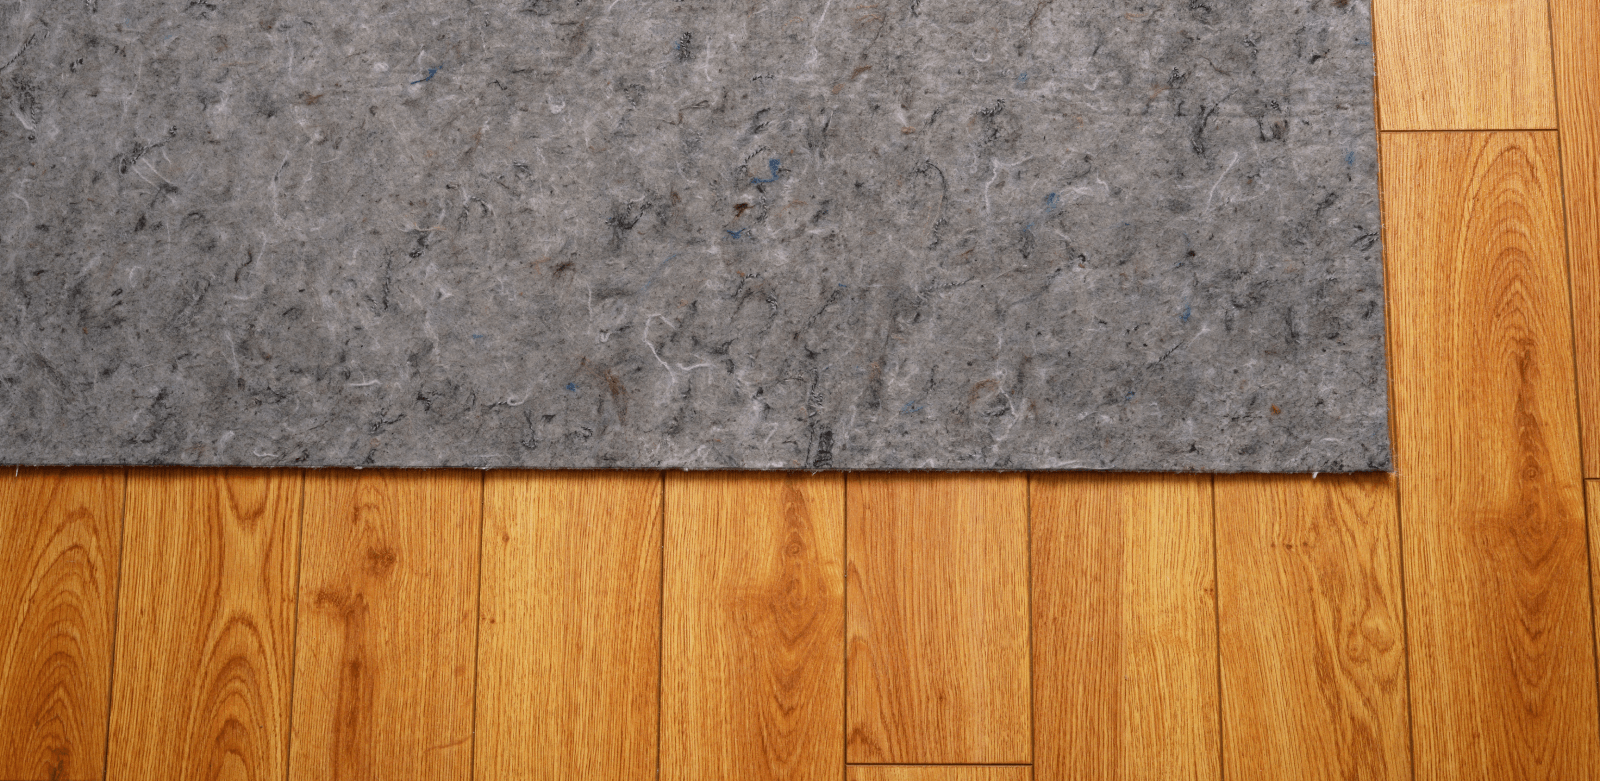 Rug pad | LeClaire Flooring